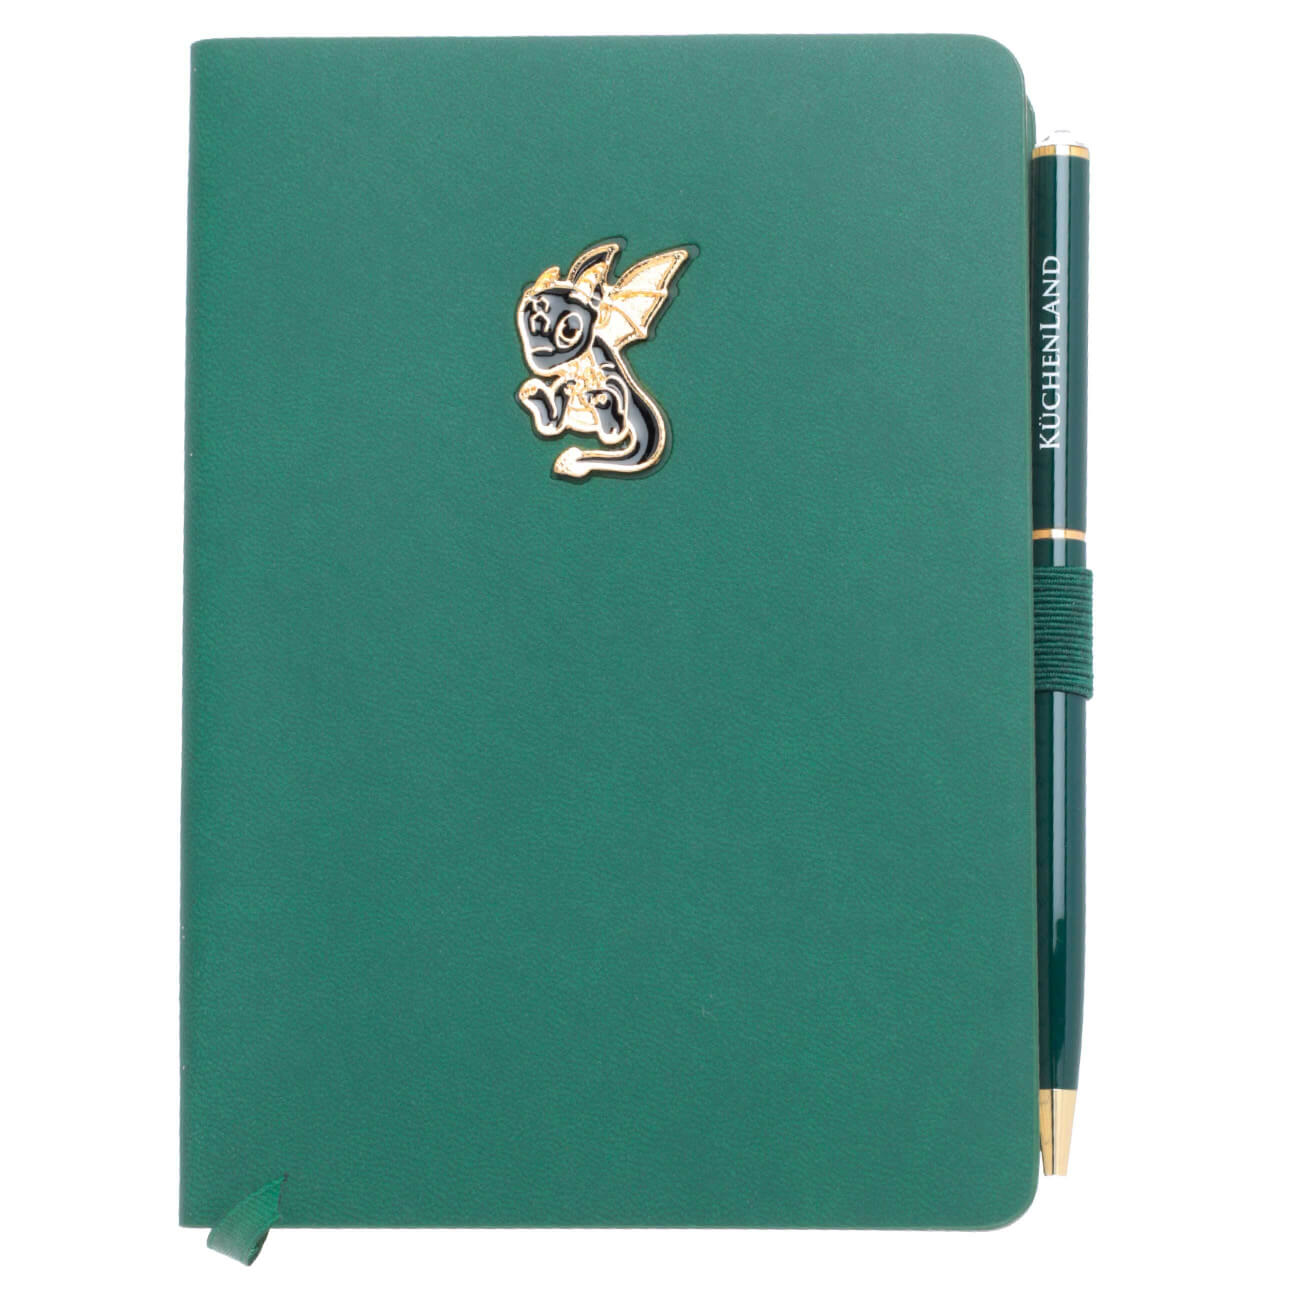 Блокнот для записей, 15х11 см, с ручкой, полиуретан, зеленый, Дракон с крыльями, Dragon spyro блокнот для набросков hahnemuhle а5 20 л 140 г